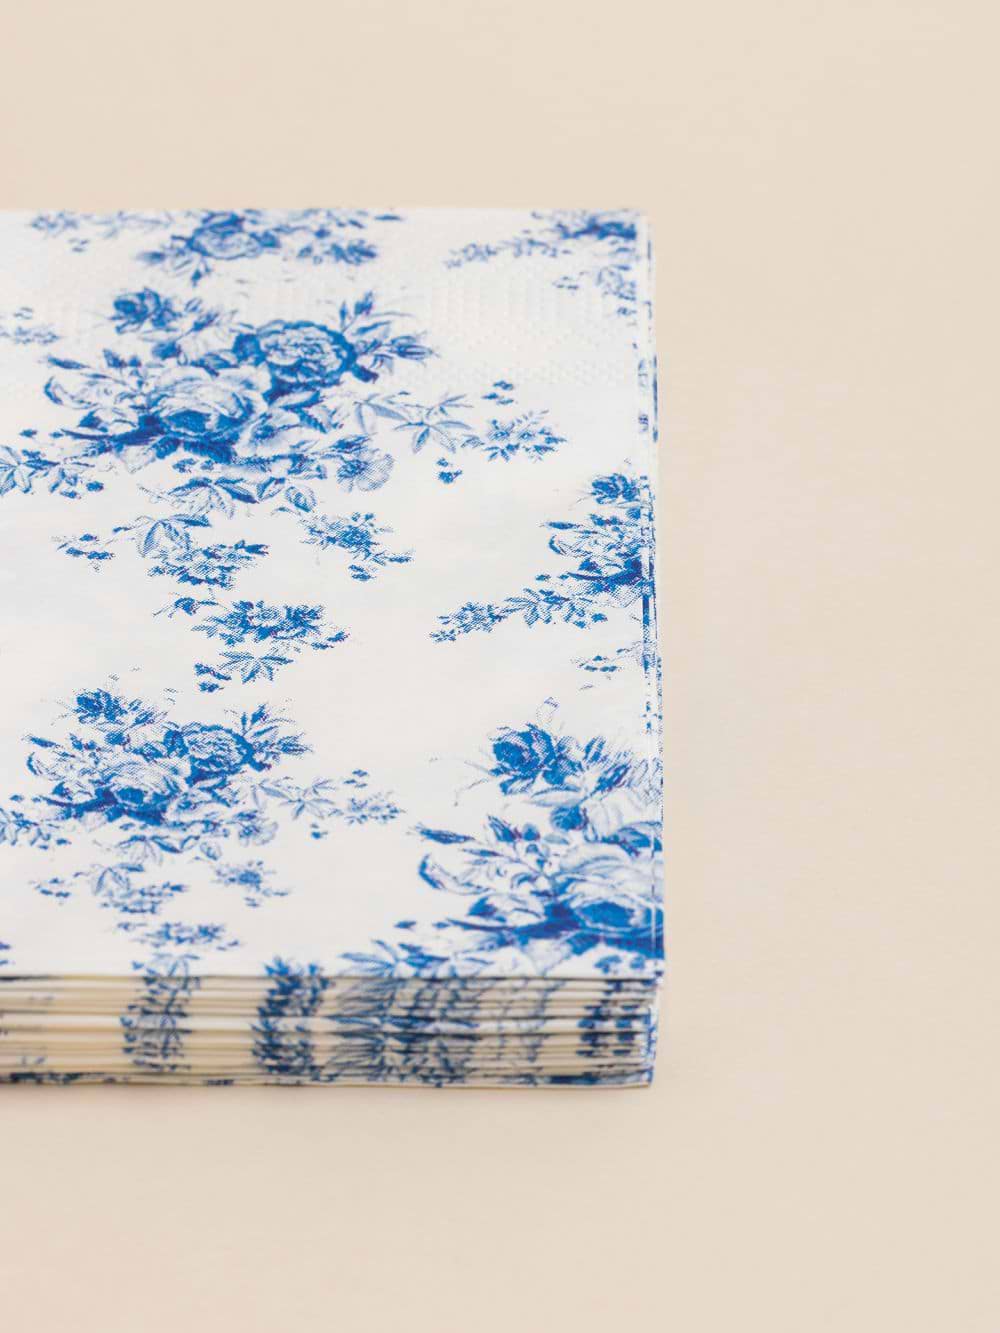 חבילת מפיות בעיצוב פרחים כחולים 16.5X16.5 ס”מ